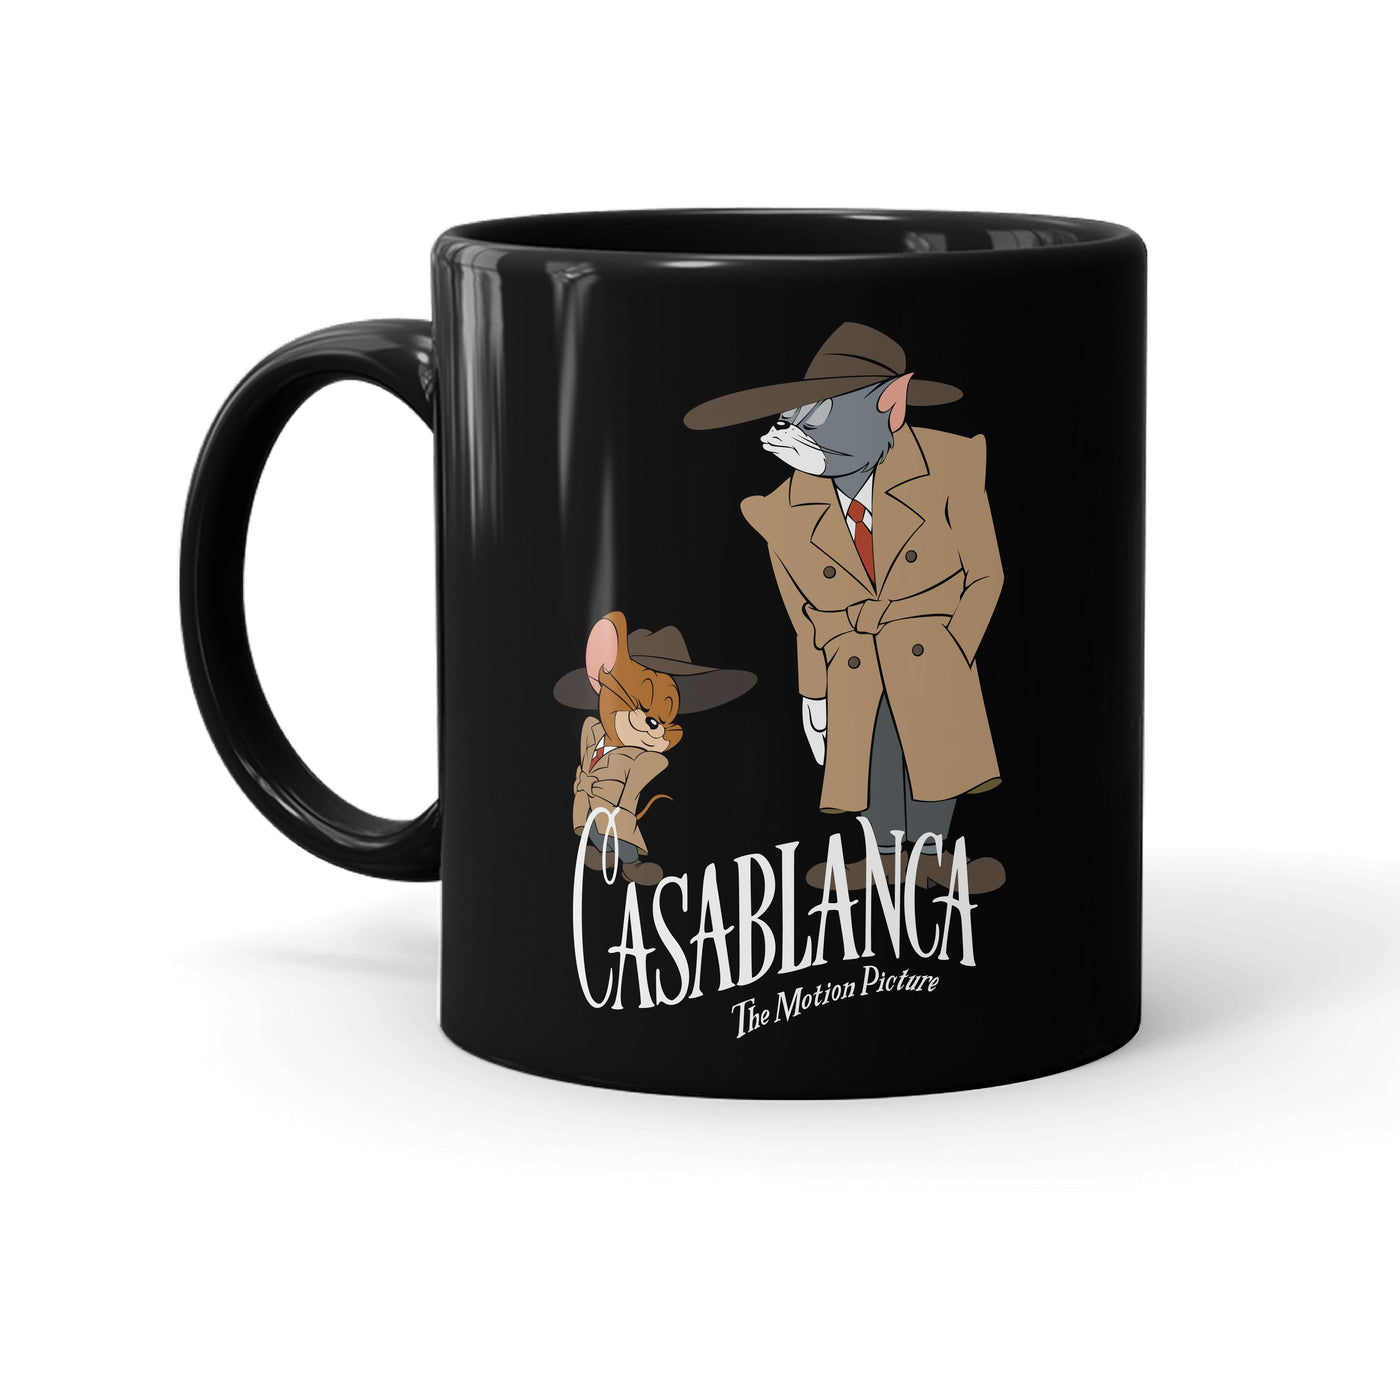 WB 100 Tom and Jerry x Casablanca Black Mug